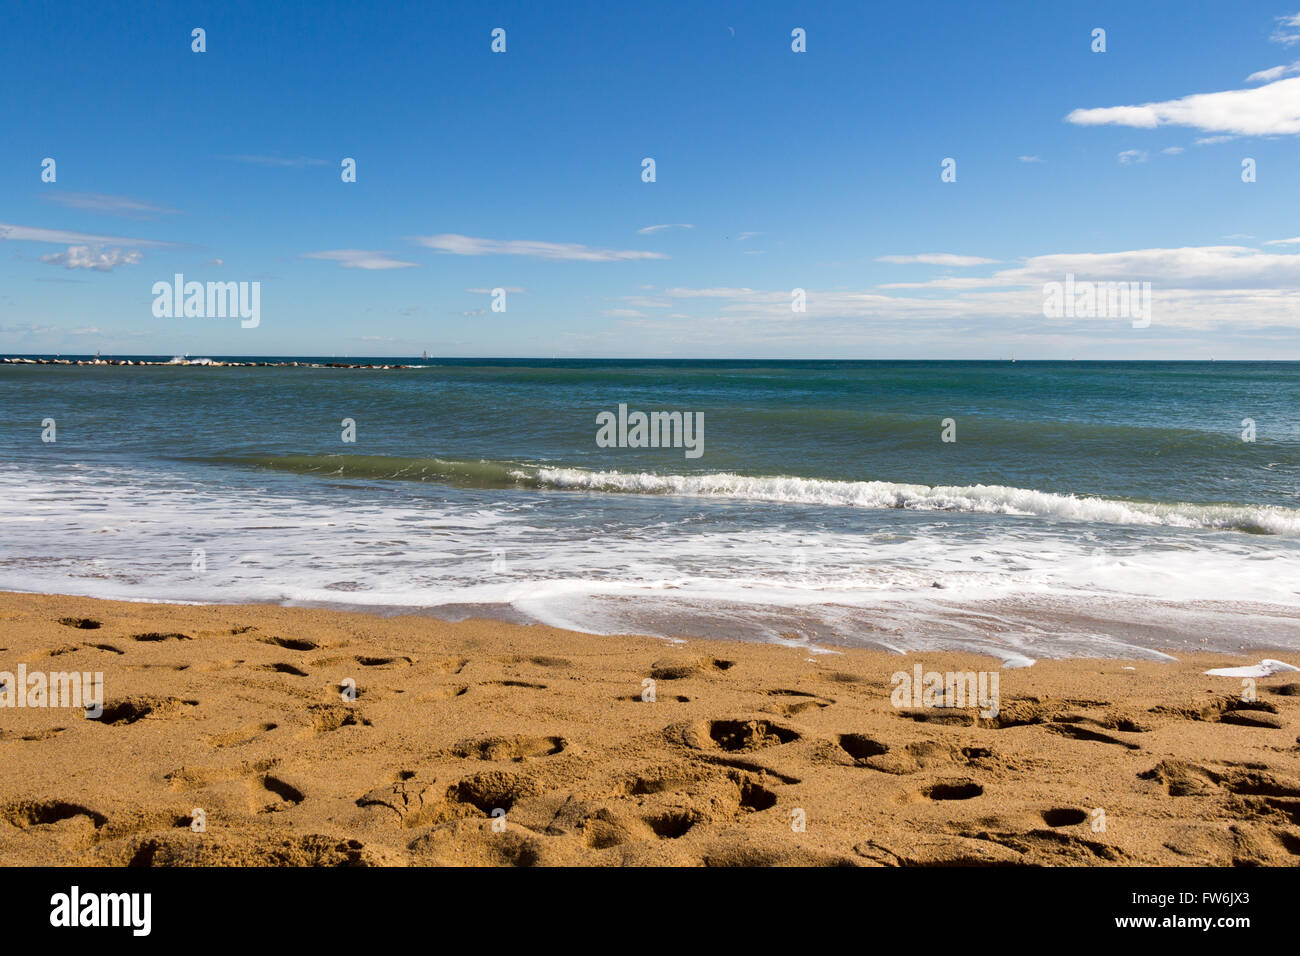 Mare spiaggia blue sky sabbia sun daylight relax punto di vista del paesaggio per progettare una cartolina e calendario Foto Stock